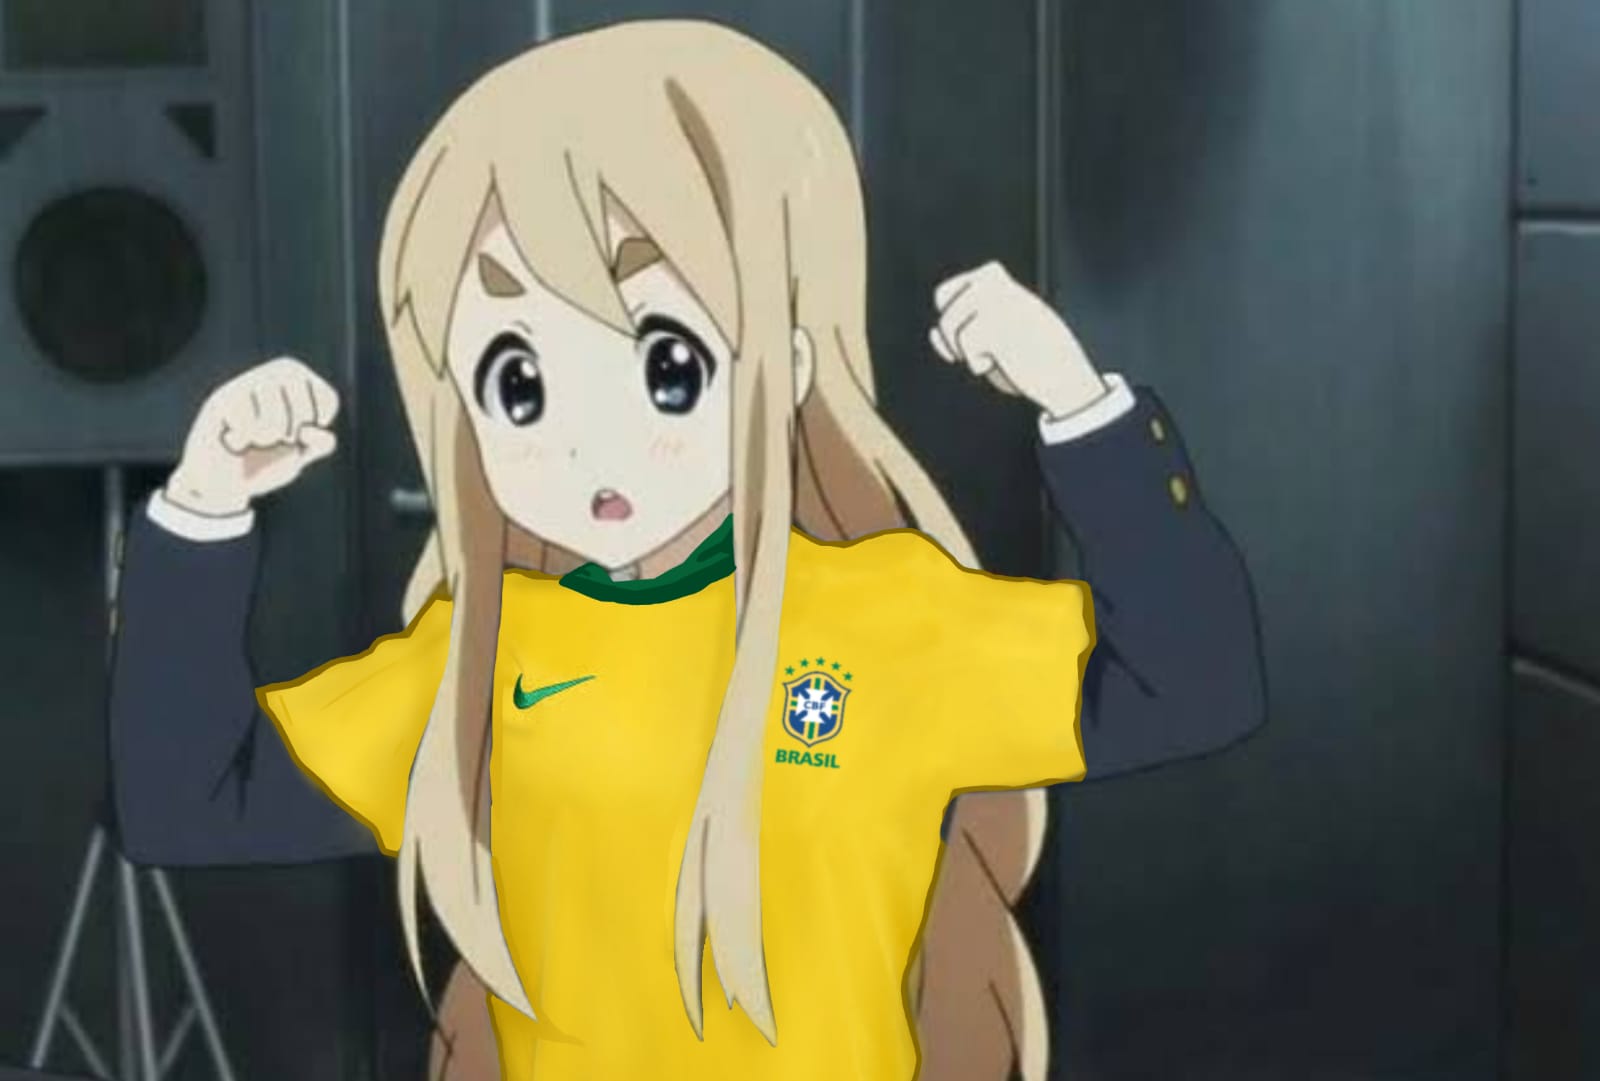 Enfim melhor estado do Brasil e quem discorda é fanboy~adm : r/AnimemeBR